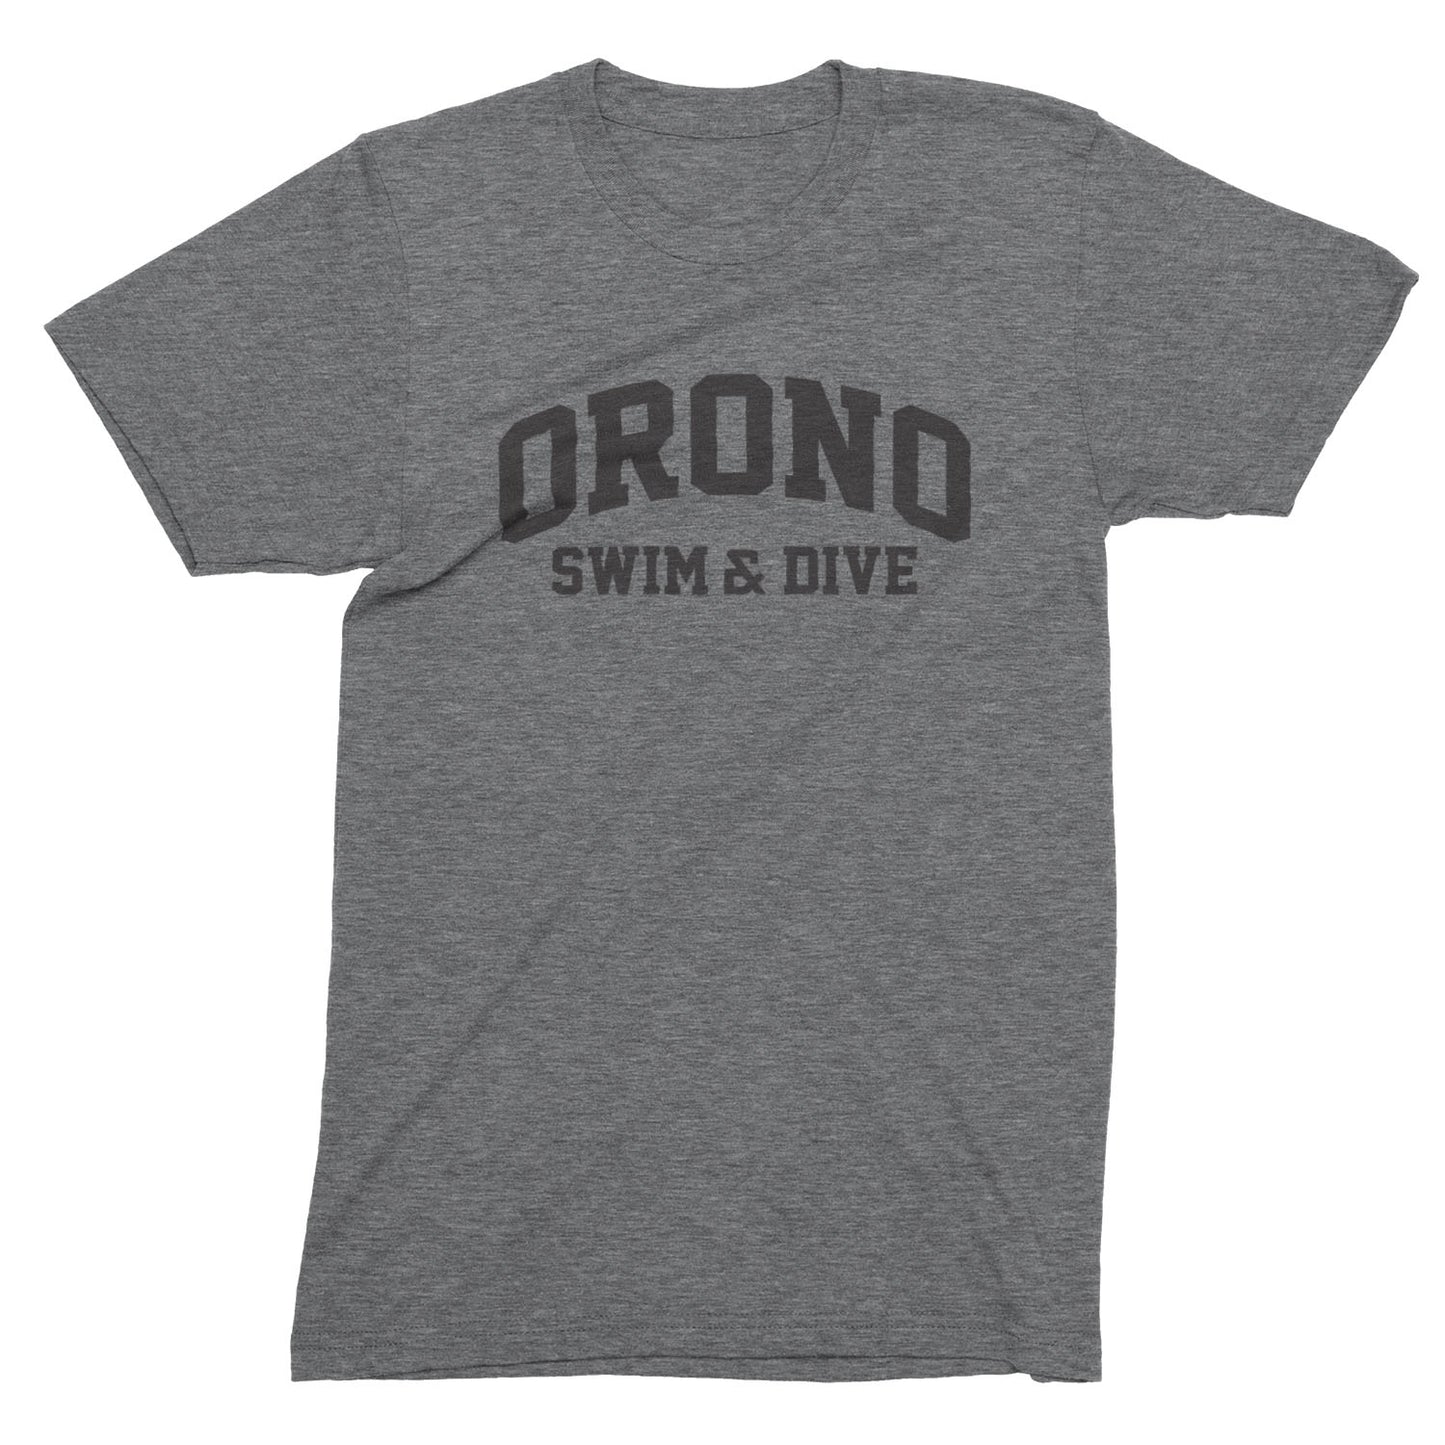 Orono Swim & Dive Collegiate // Men's Tri-blend Tee